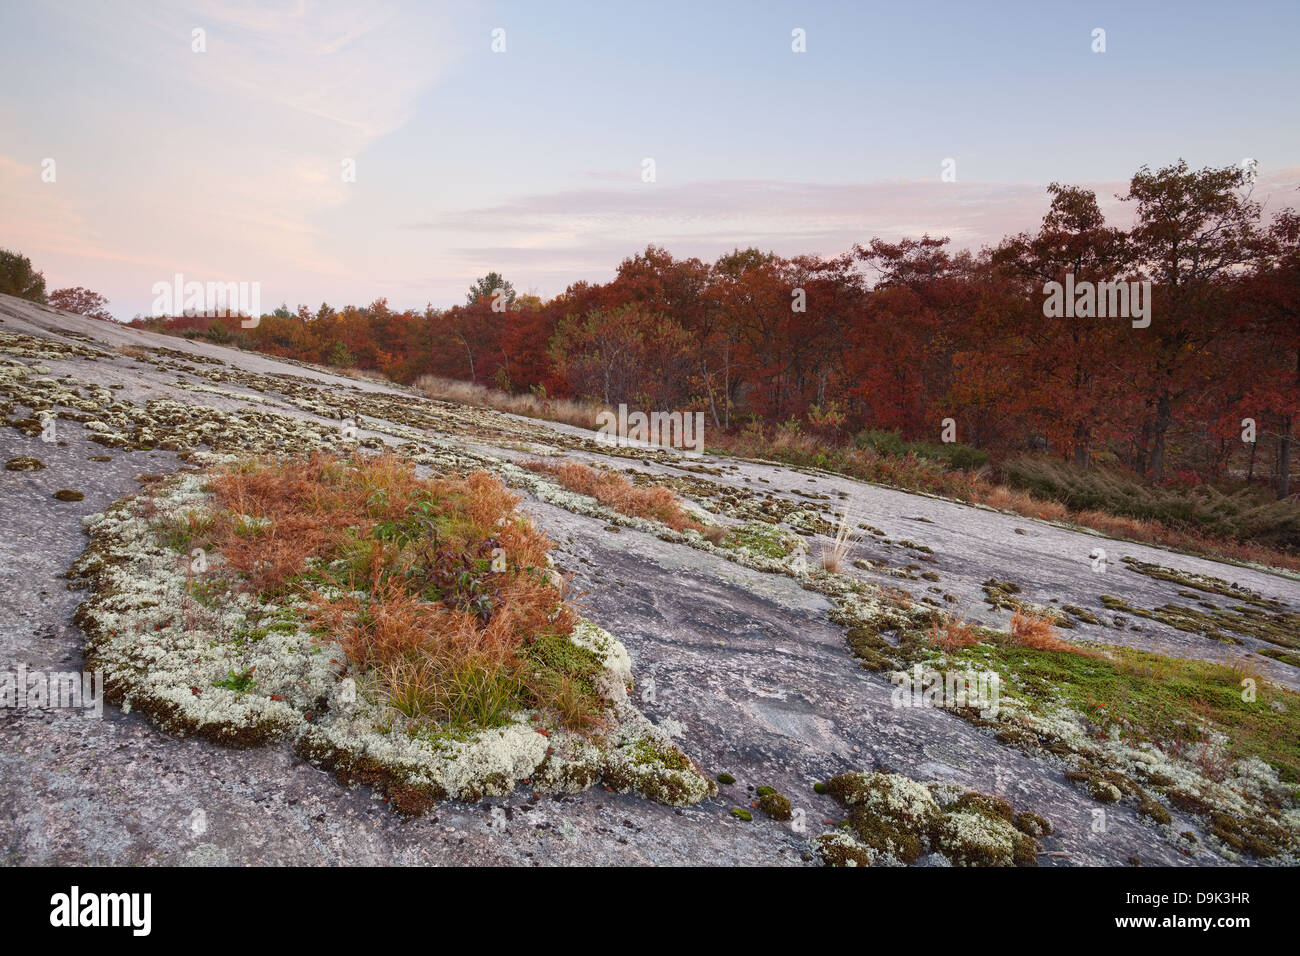 Grandi lichen patch con la Borgogna alberi di quercia in background, Muskoka, Ontario, Canada. Foto Stock